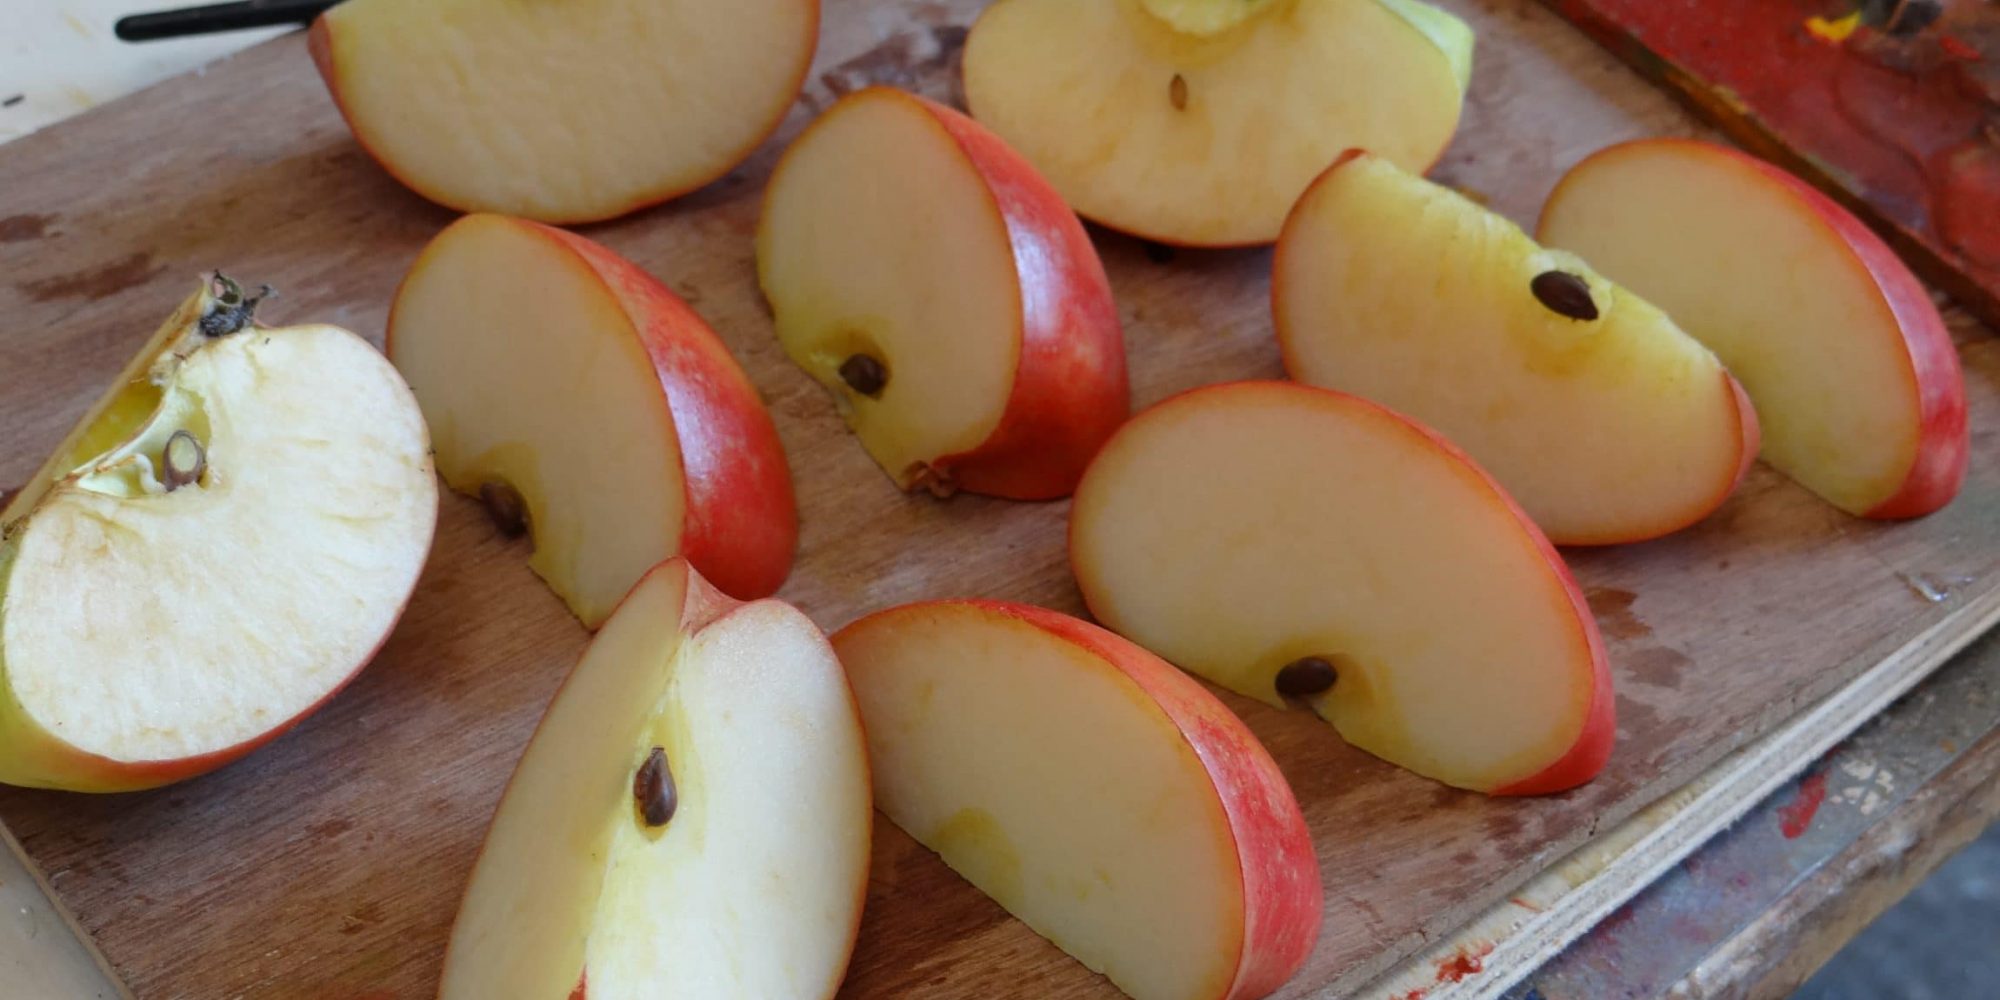 fruits factices alimentaires réalisation de faux quartiers de pomme en résine avec pépins et queues